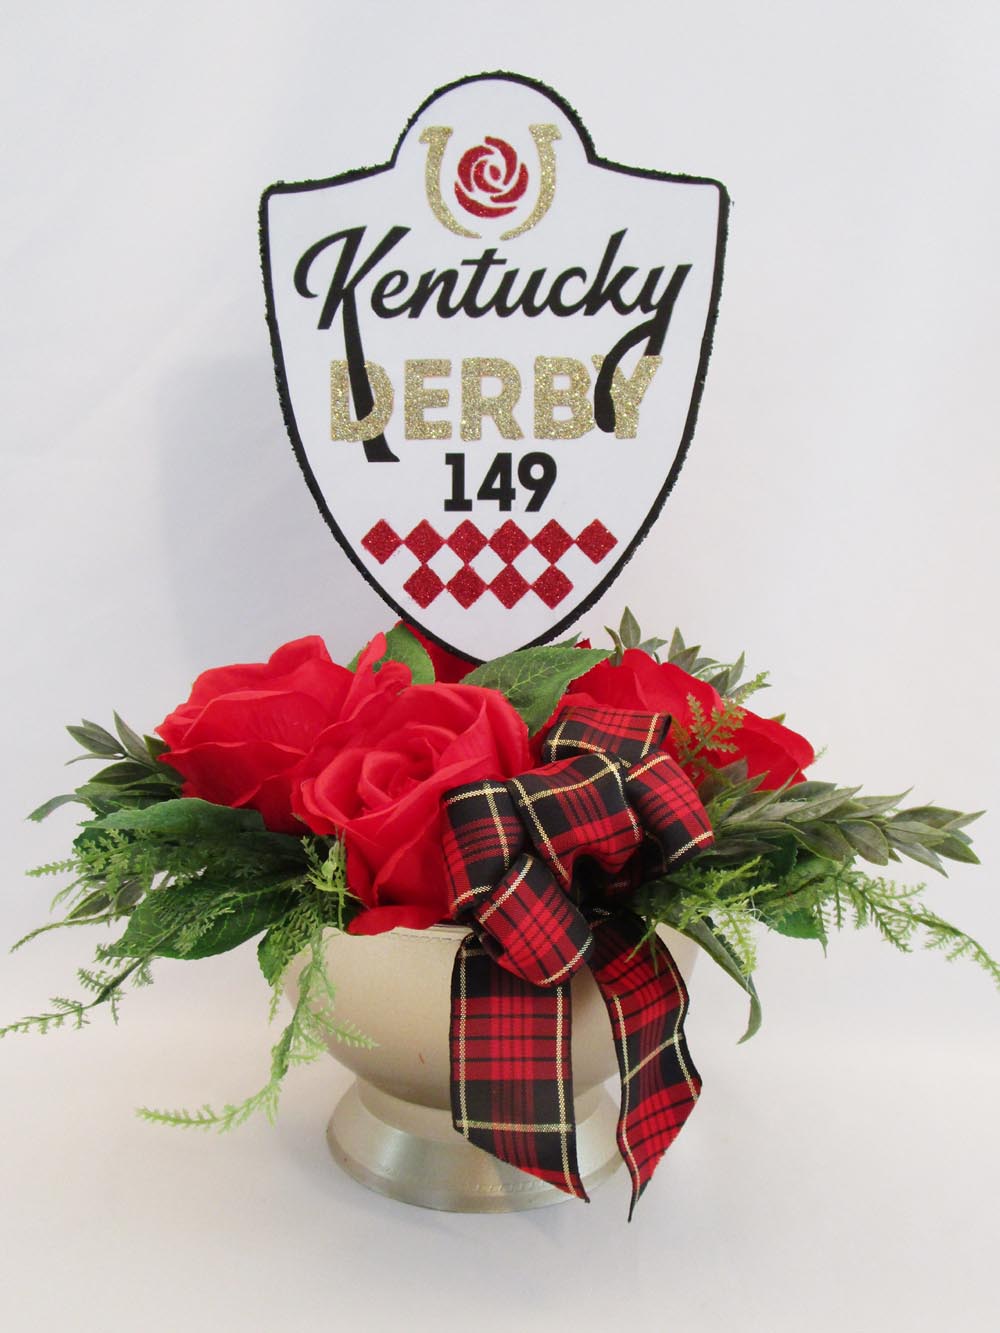 149th Kentucky Derby Centerpiece